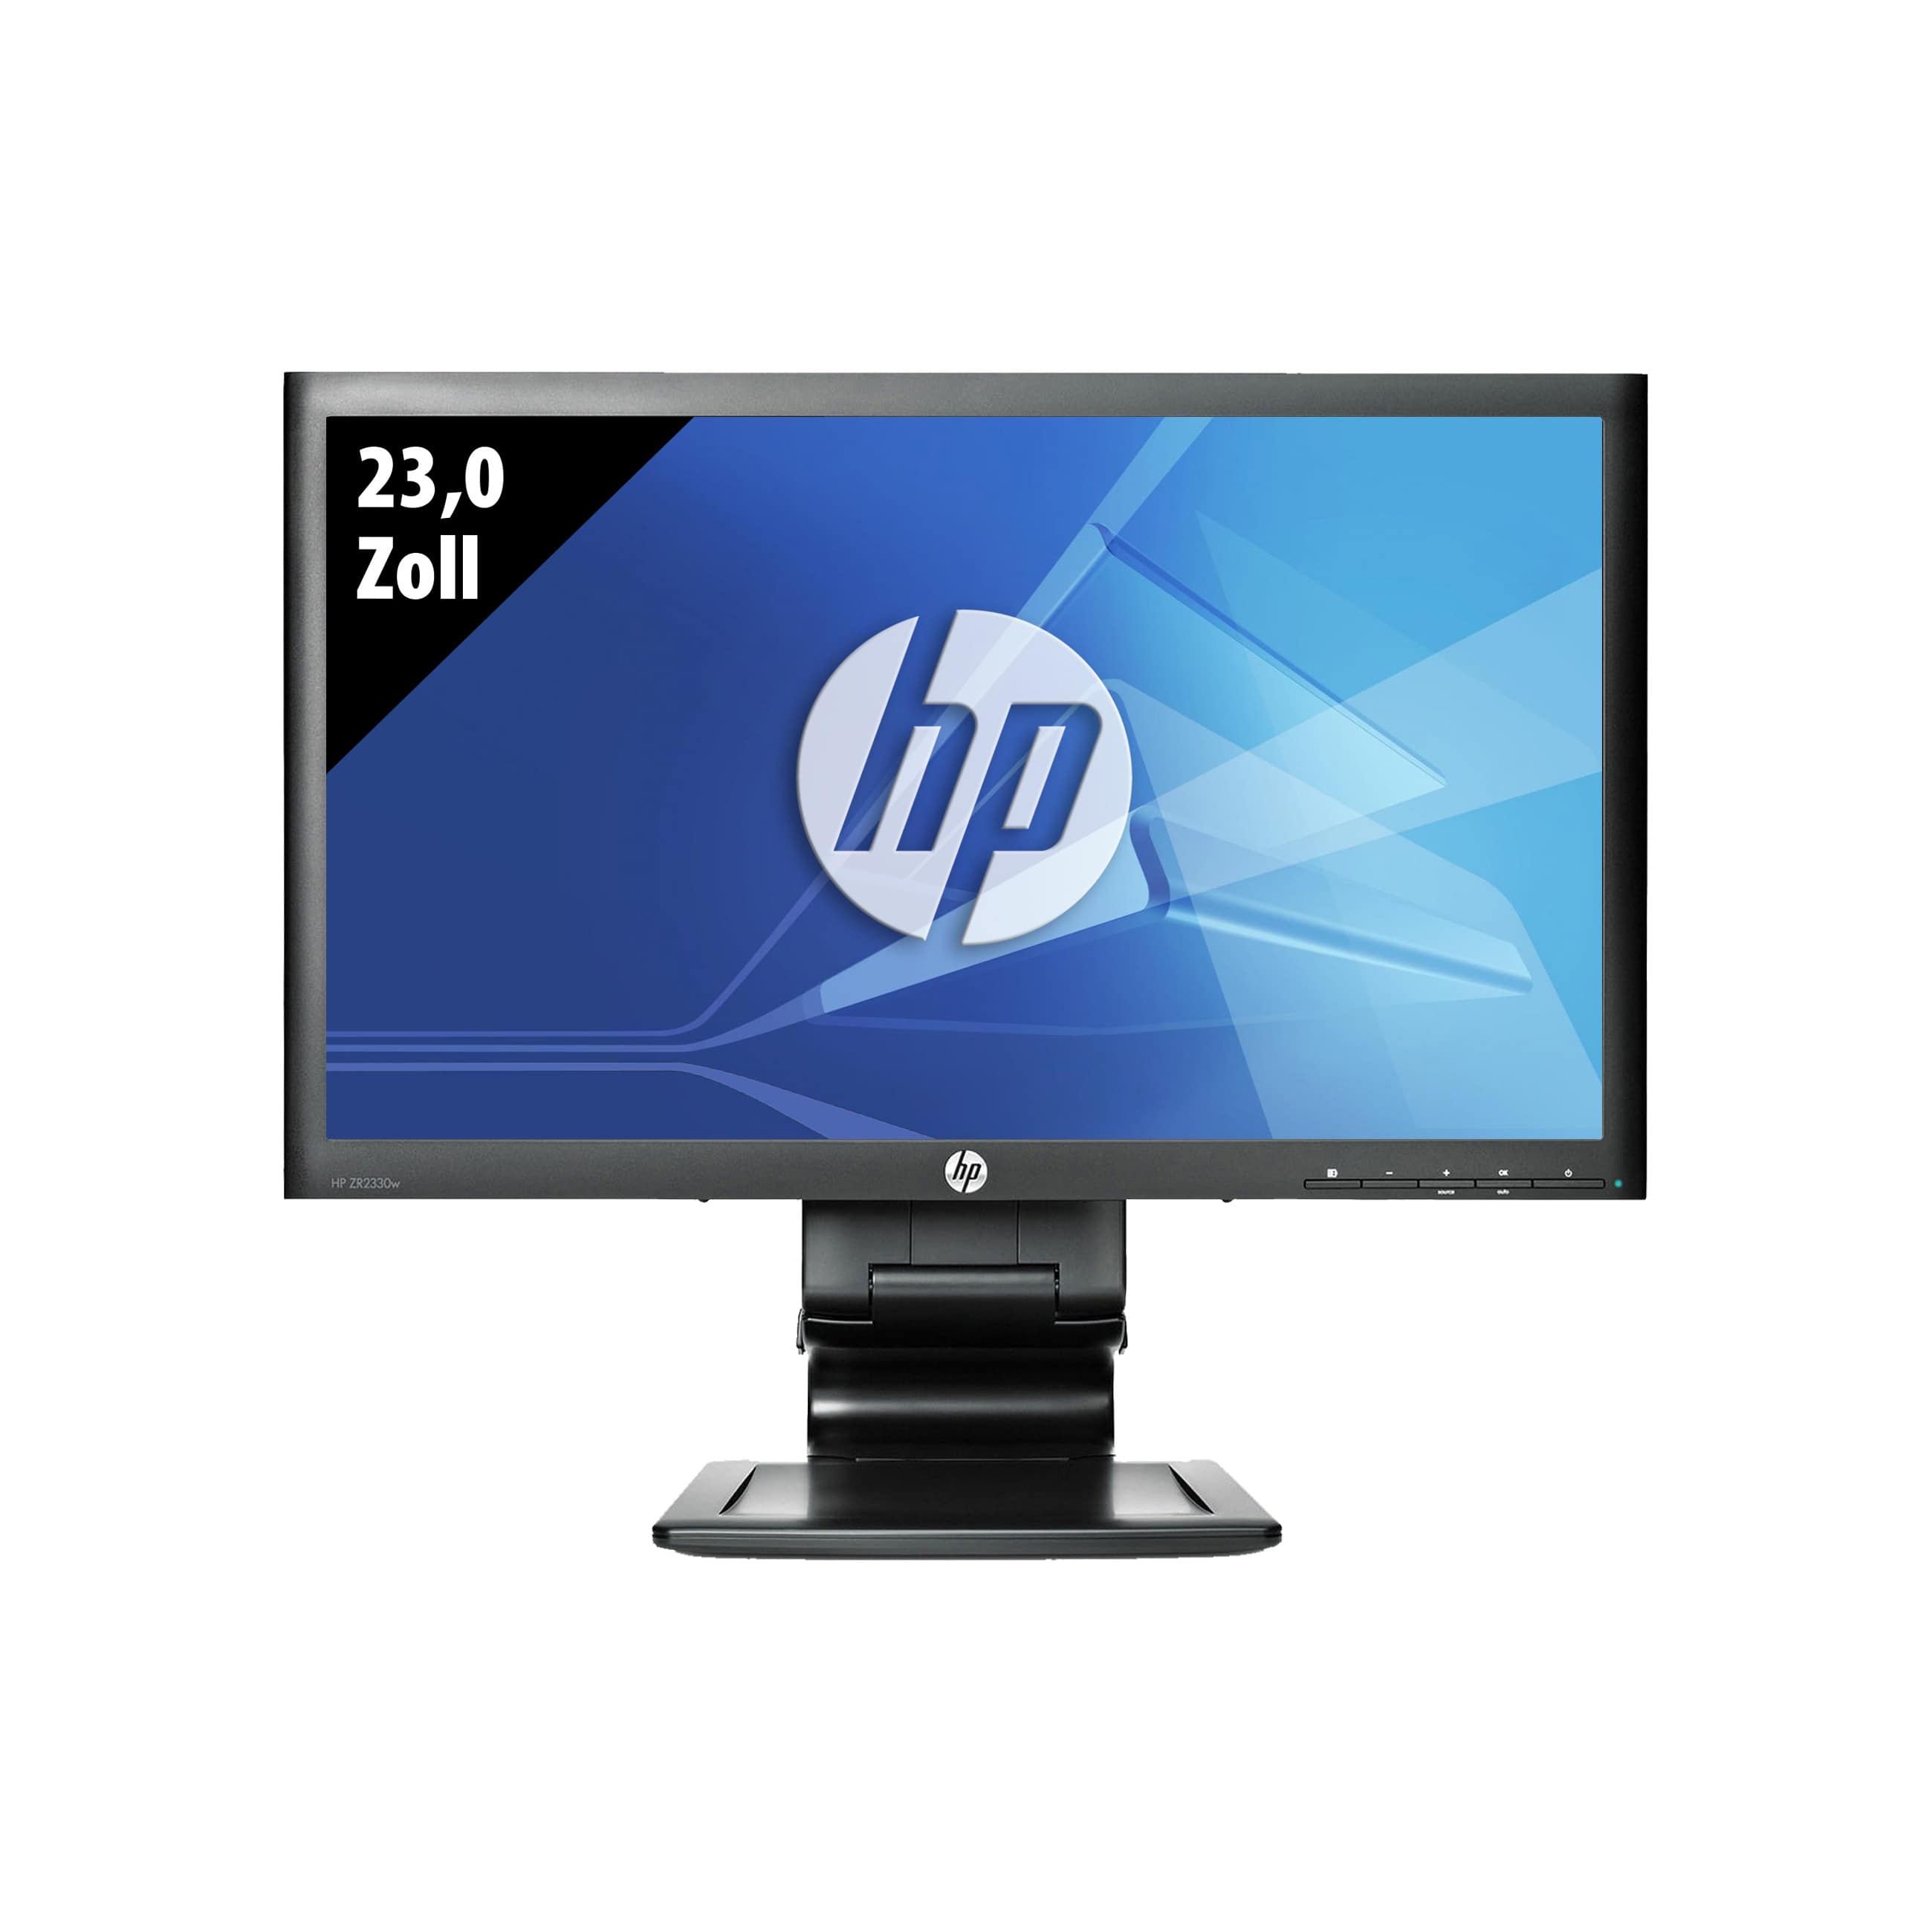 HP Z Display ZR2330w - 1920 x 1080 - FHD